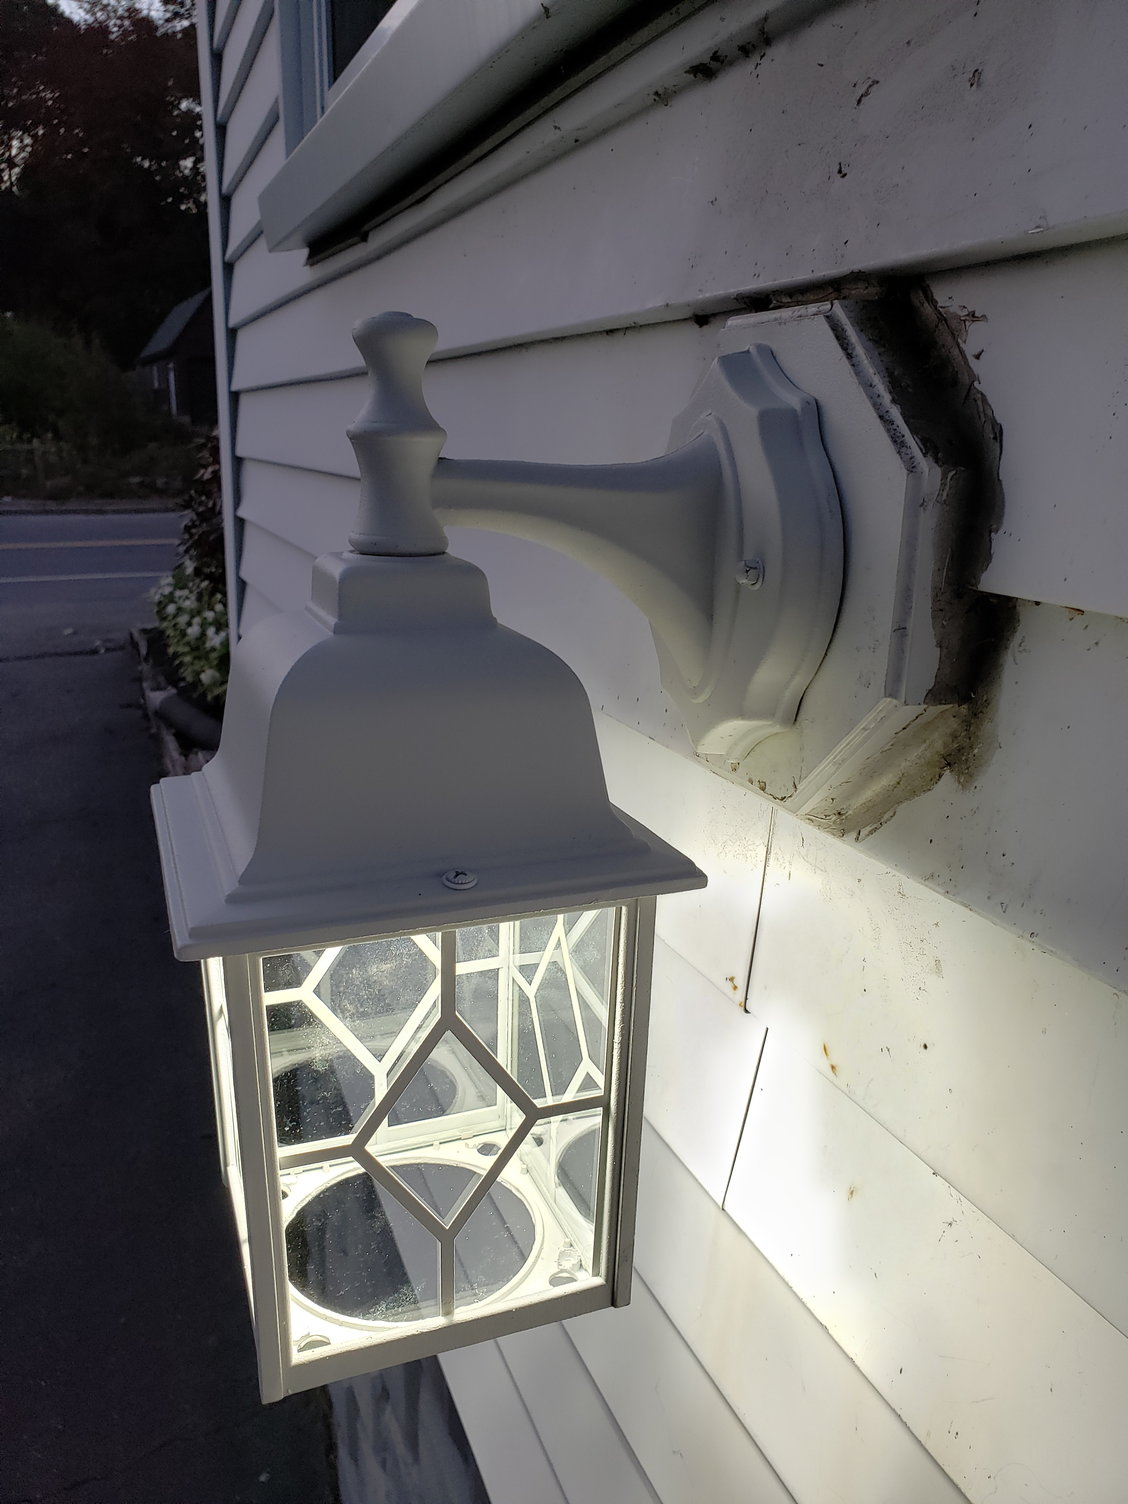 Adding dusk to dawn sensor to exterior light fixture - DoItYourself.com